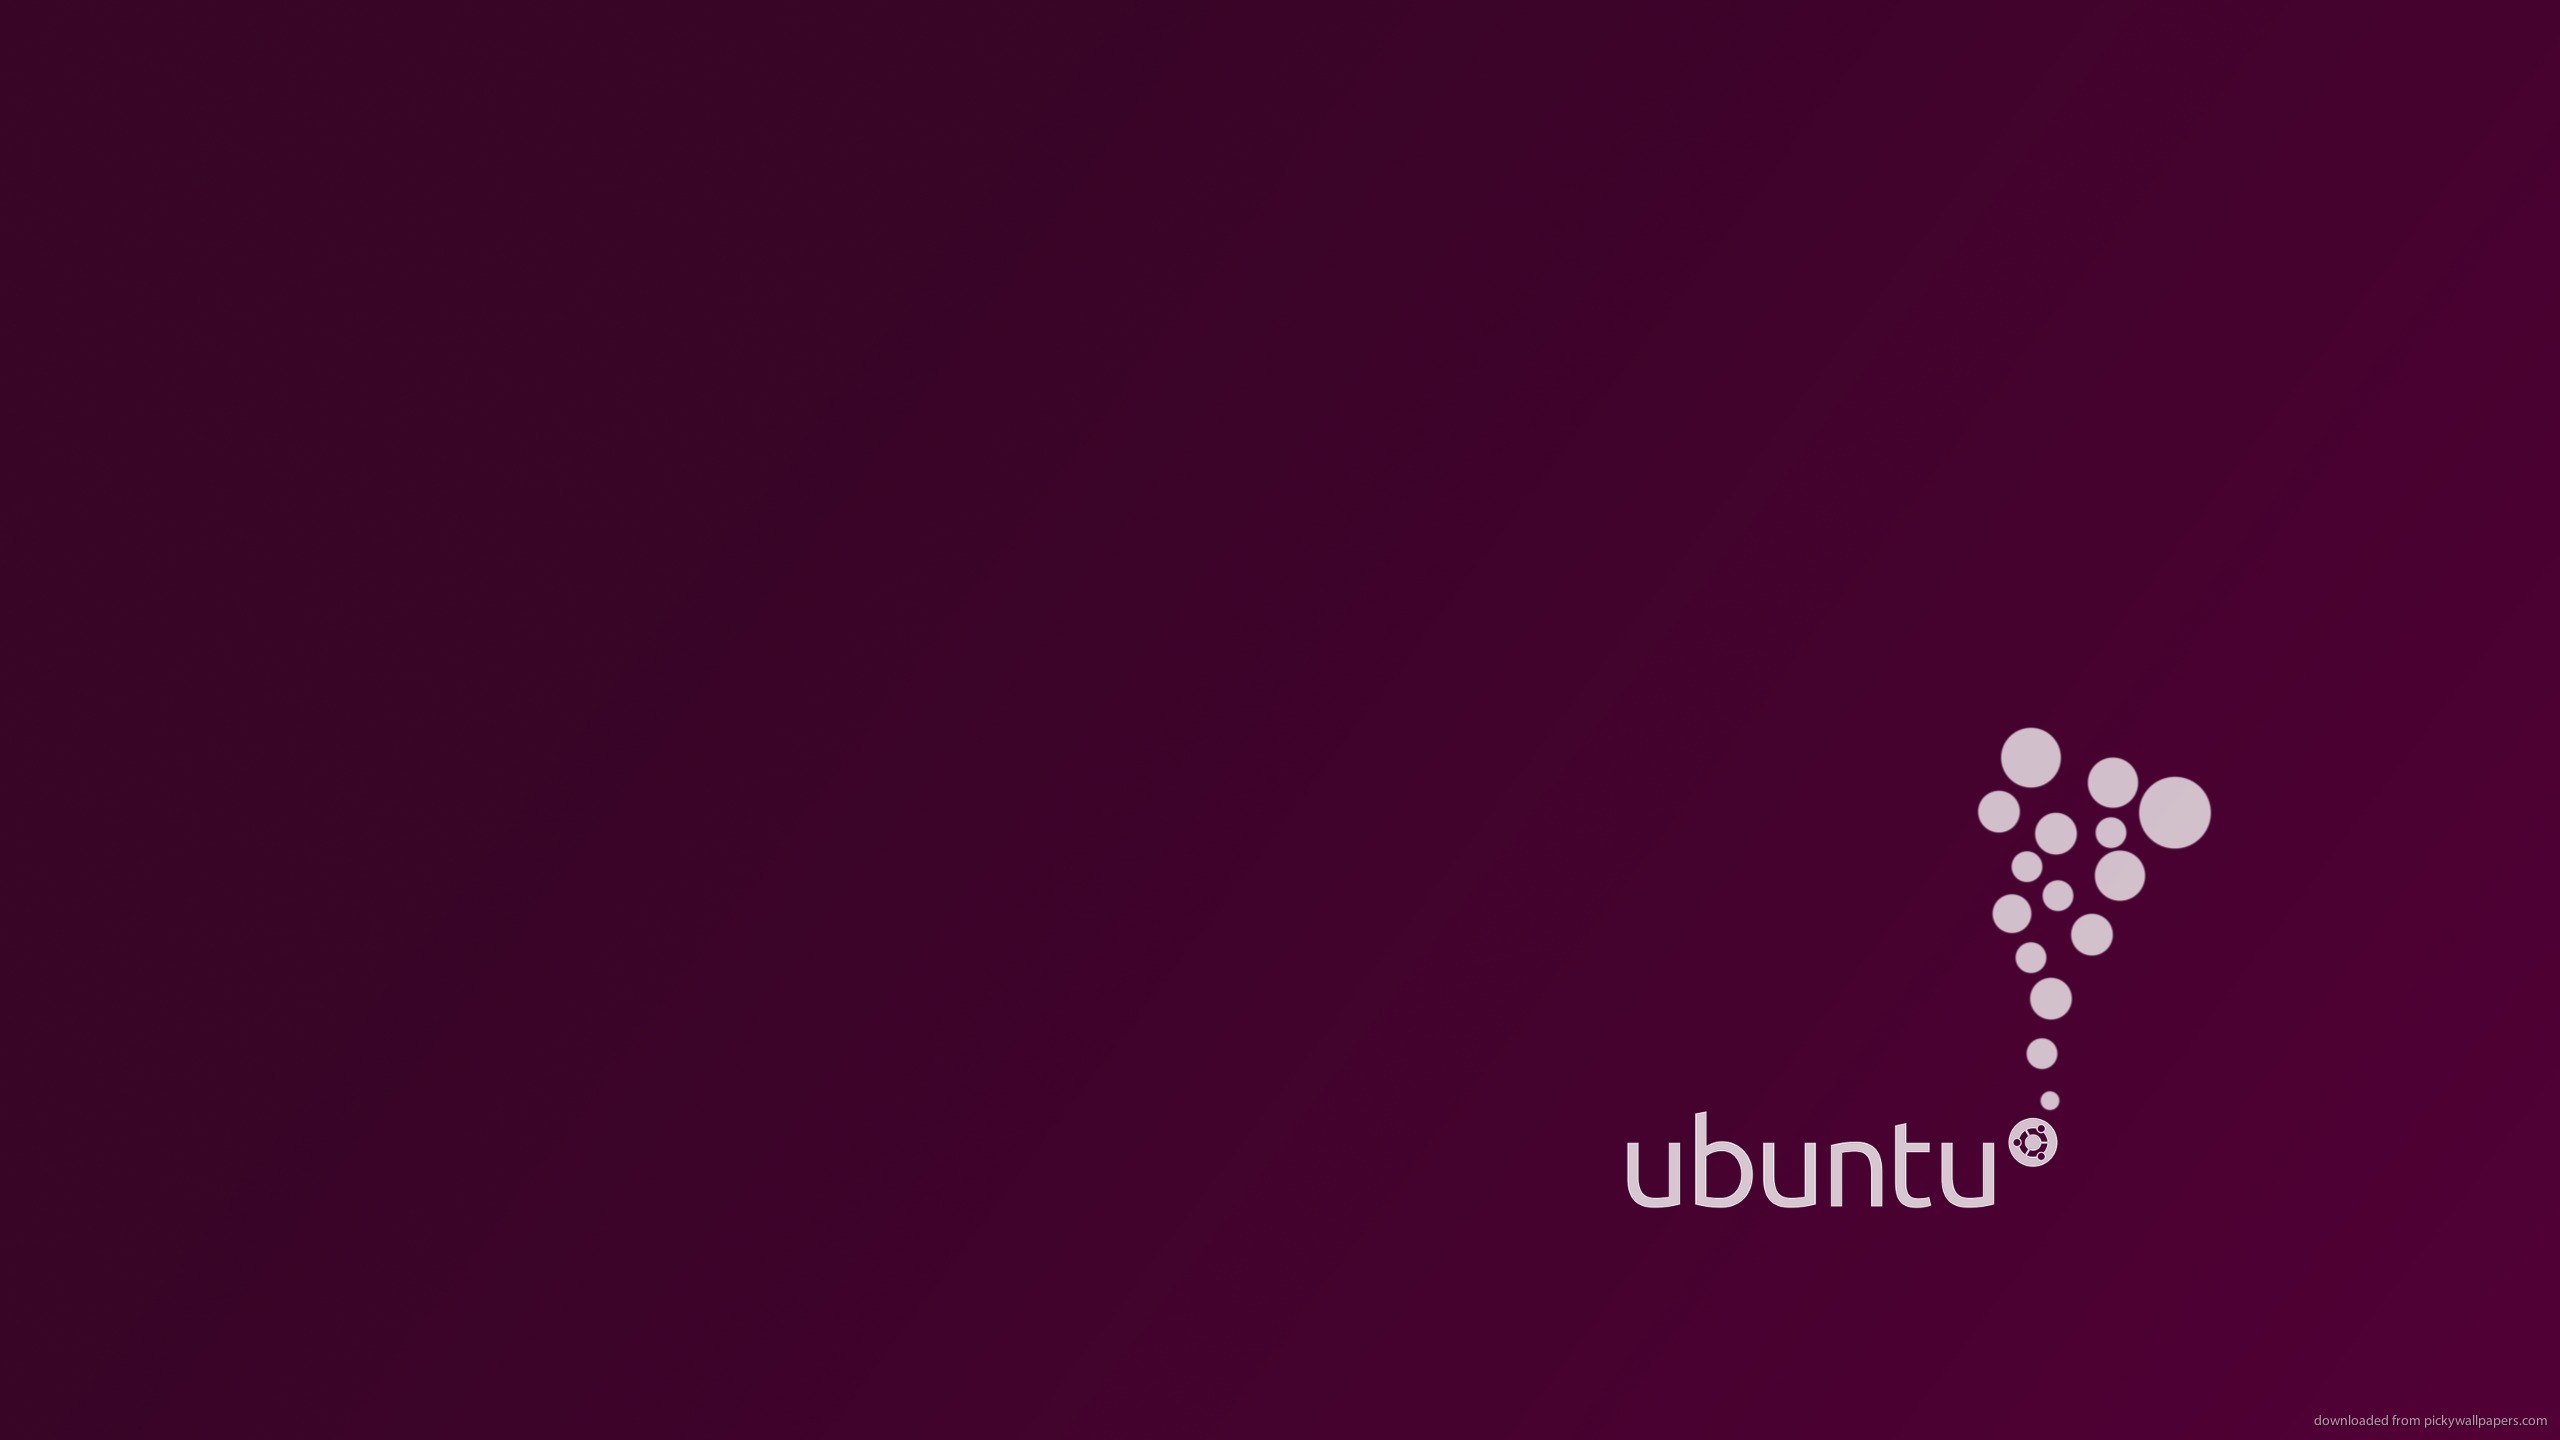 Ubuntu 1366x768 wallpapers HD free   458996